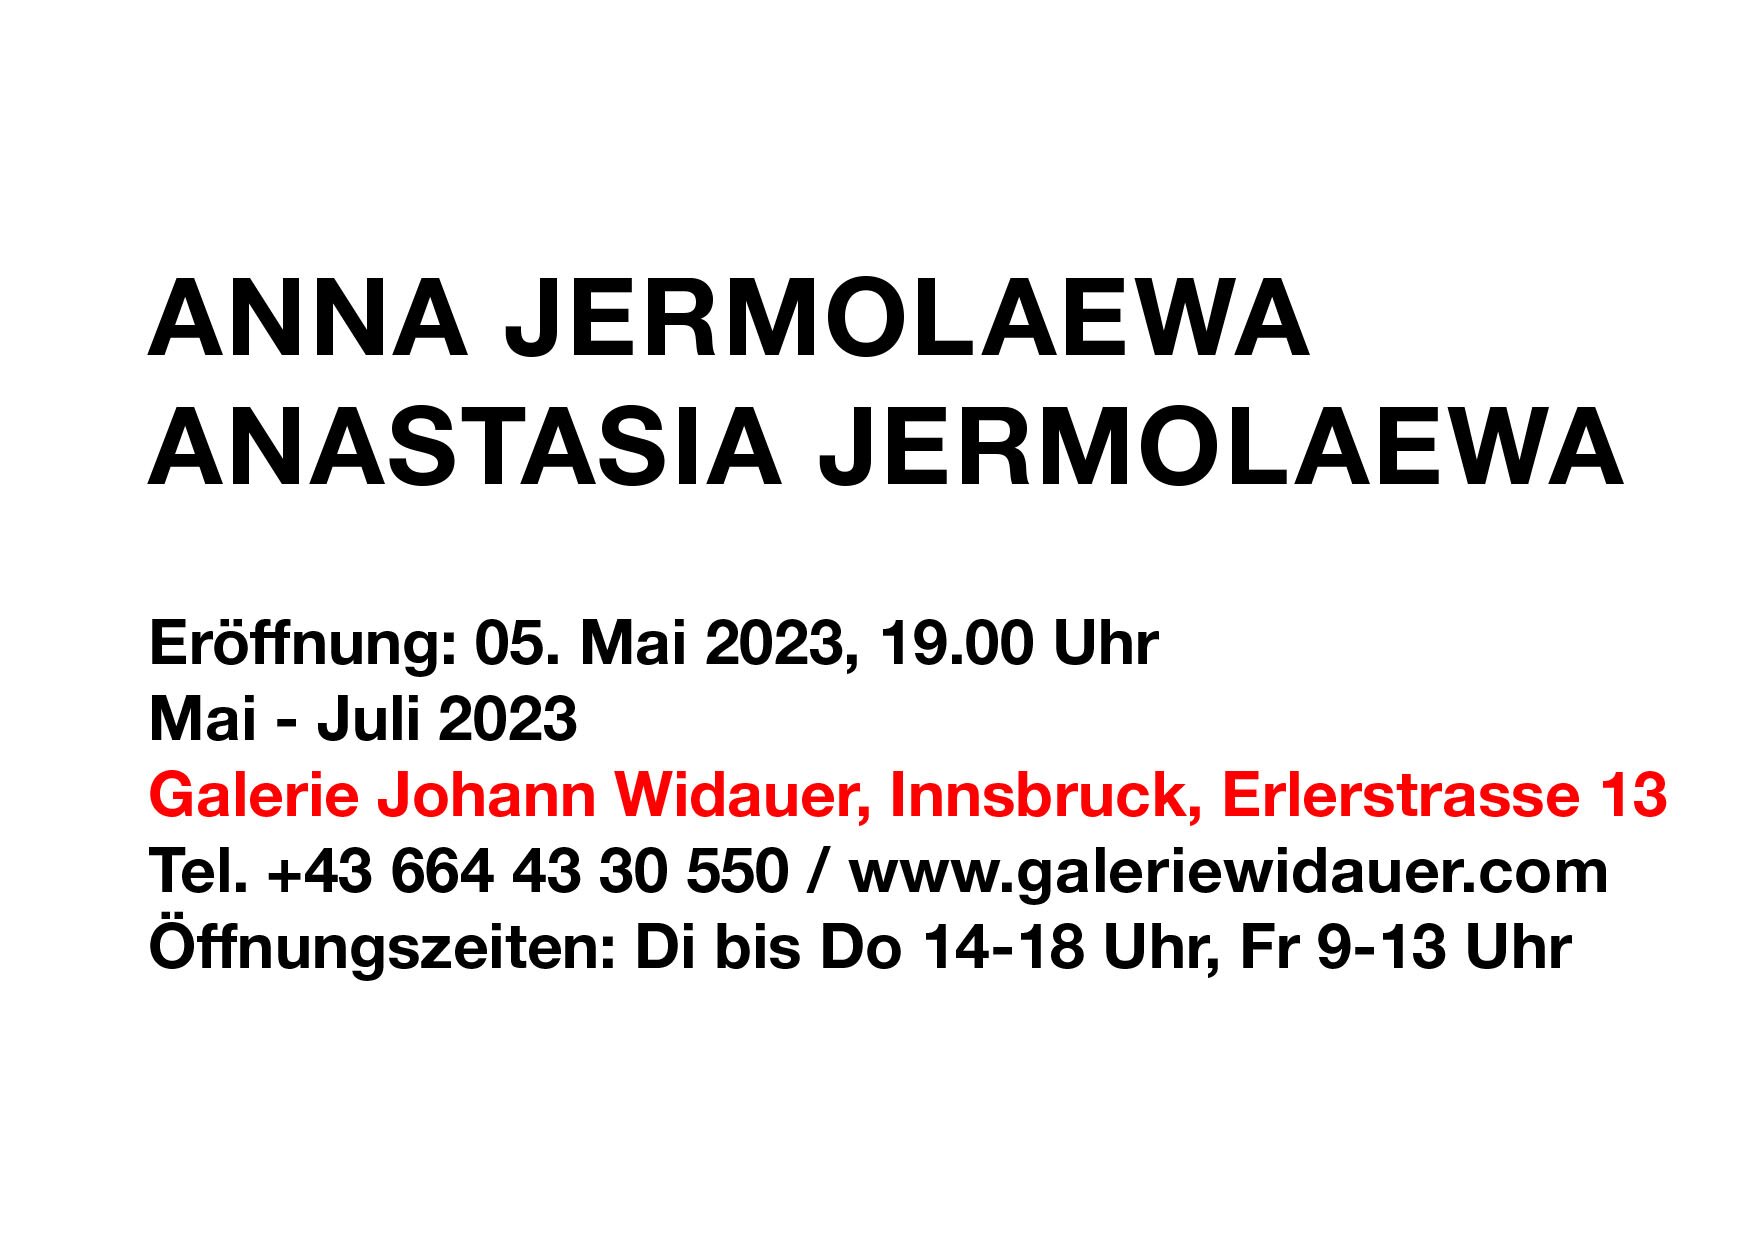 2023_Exh02_Einladungskarte_Austtellung_Anna und Anastasia Jermolaewa_.jpg